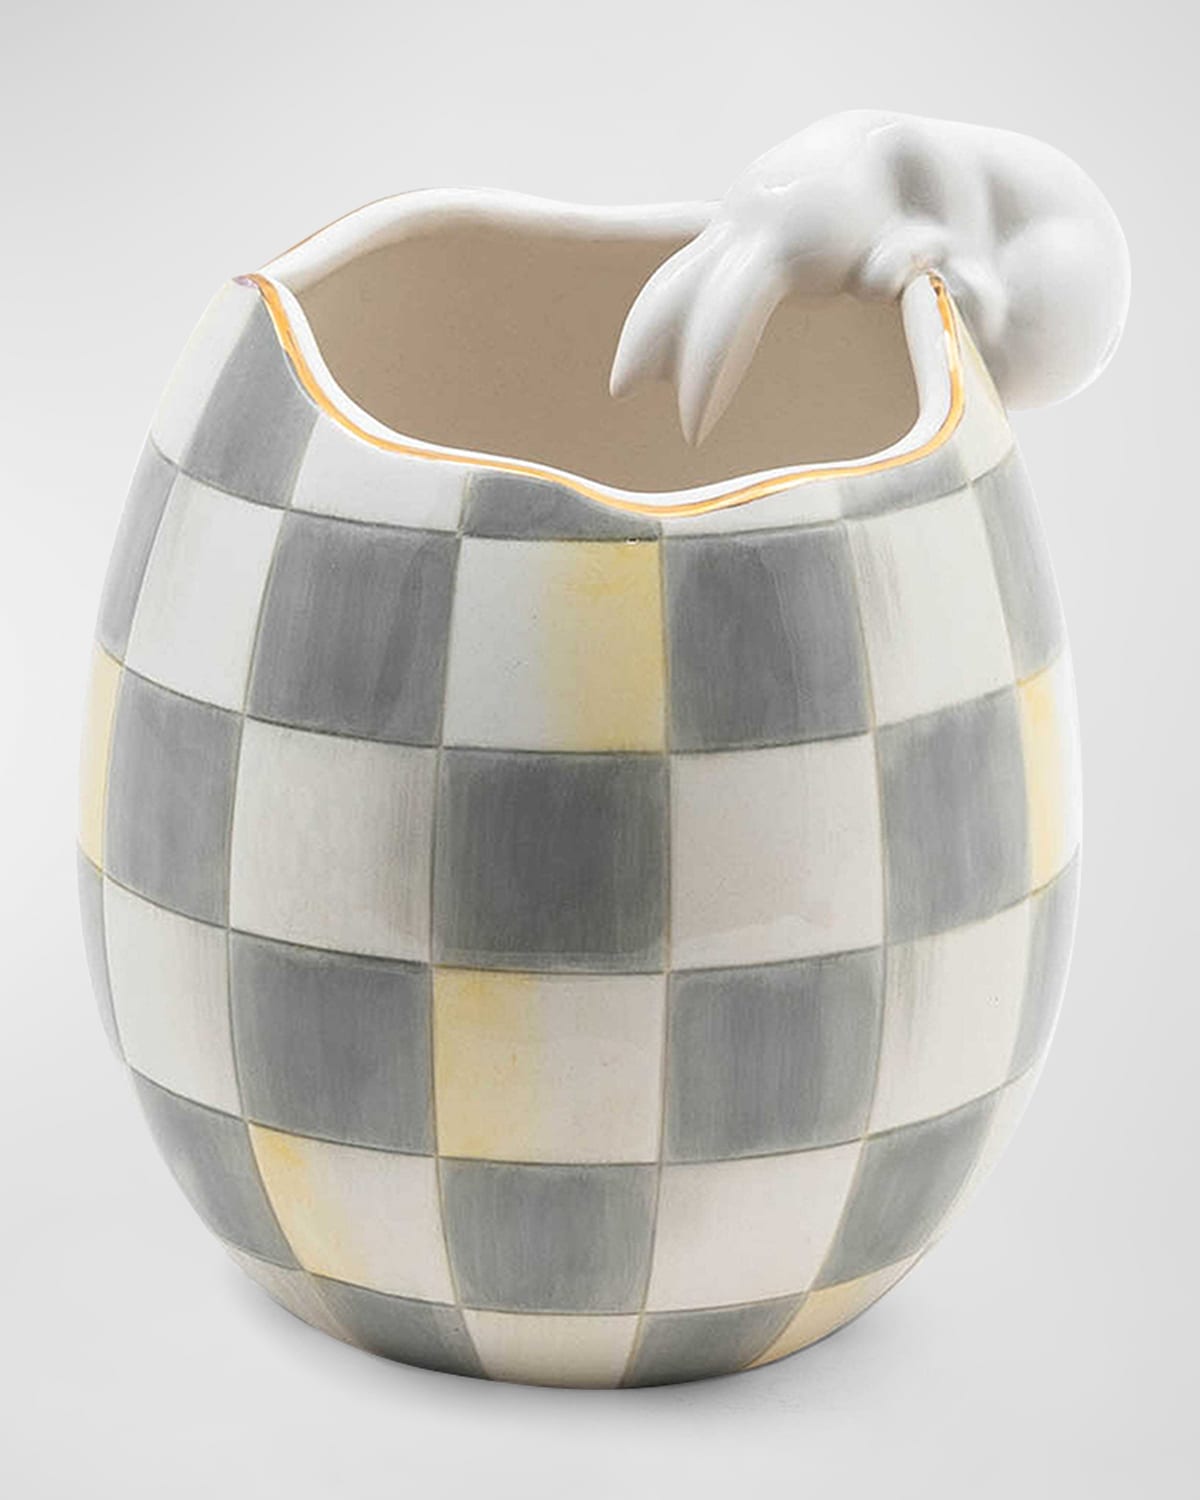 Mackenzie-childs White Rabbit Vase In Grey